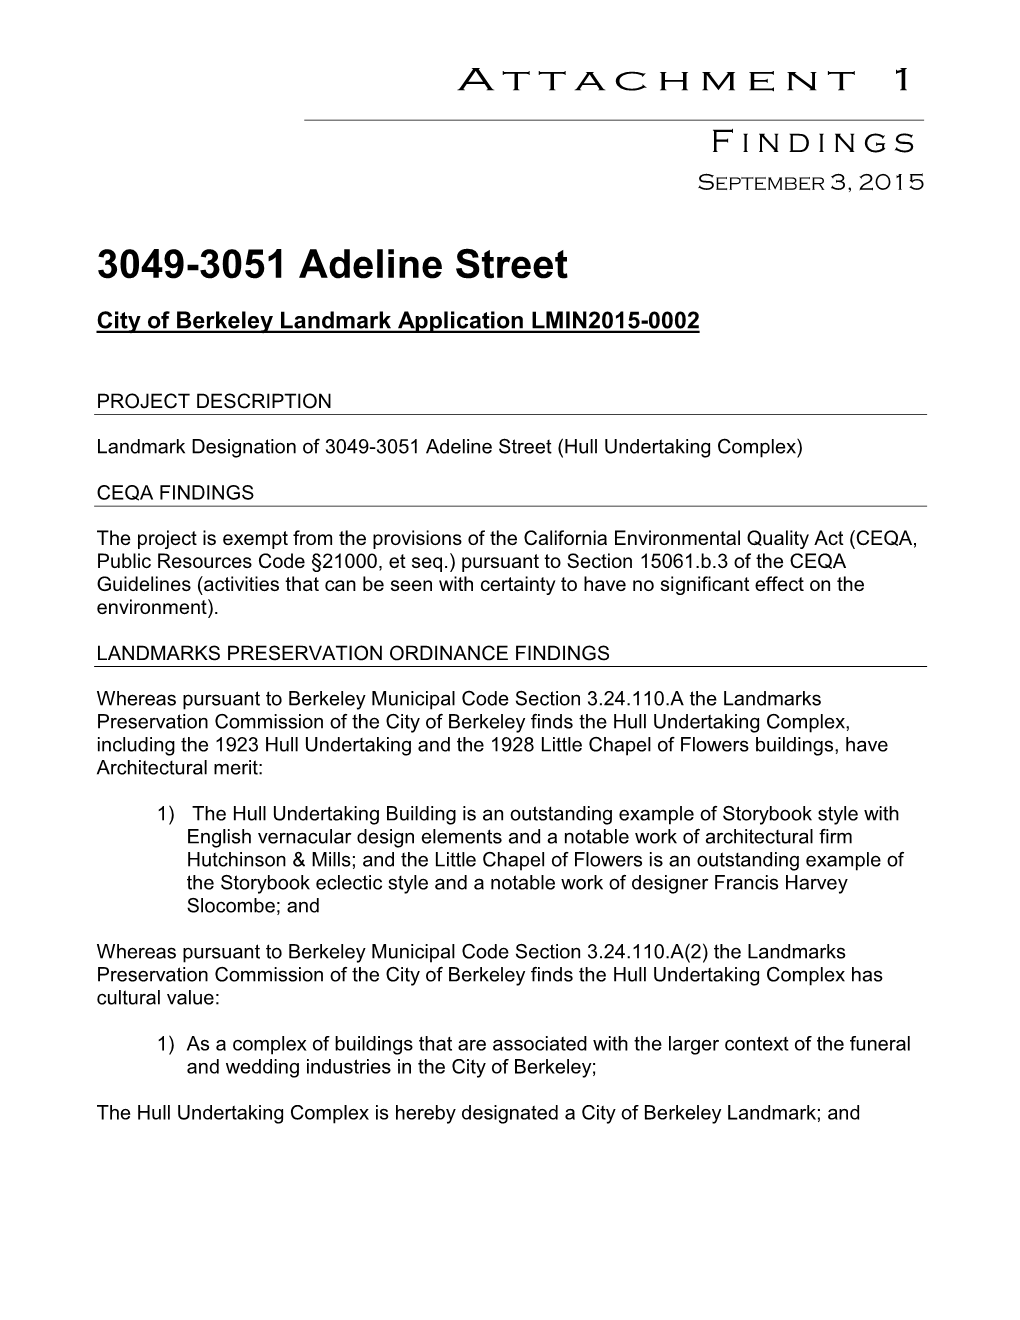 2015-09-03 LPC ATT1 3031-3051 Adeline Findings